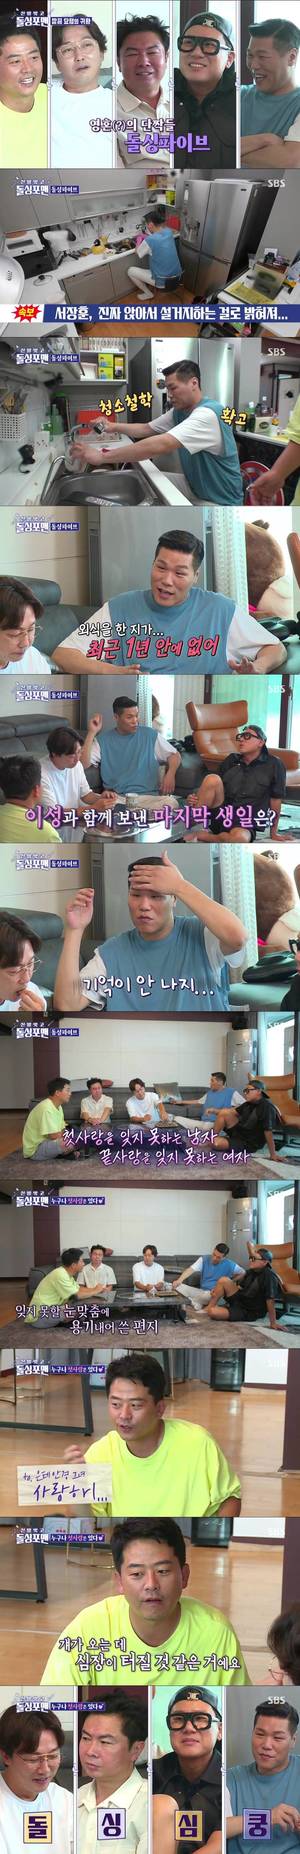 ‘돌싱포맨’ 김준호의 잊지 못할 첫사랑 사연에 ‘돌싱 심쿵’…9.9% 최고의 1분